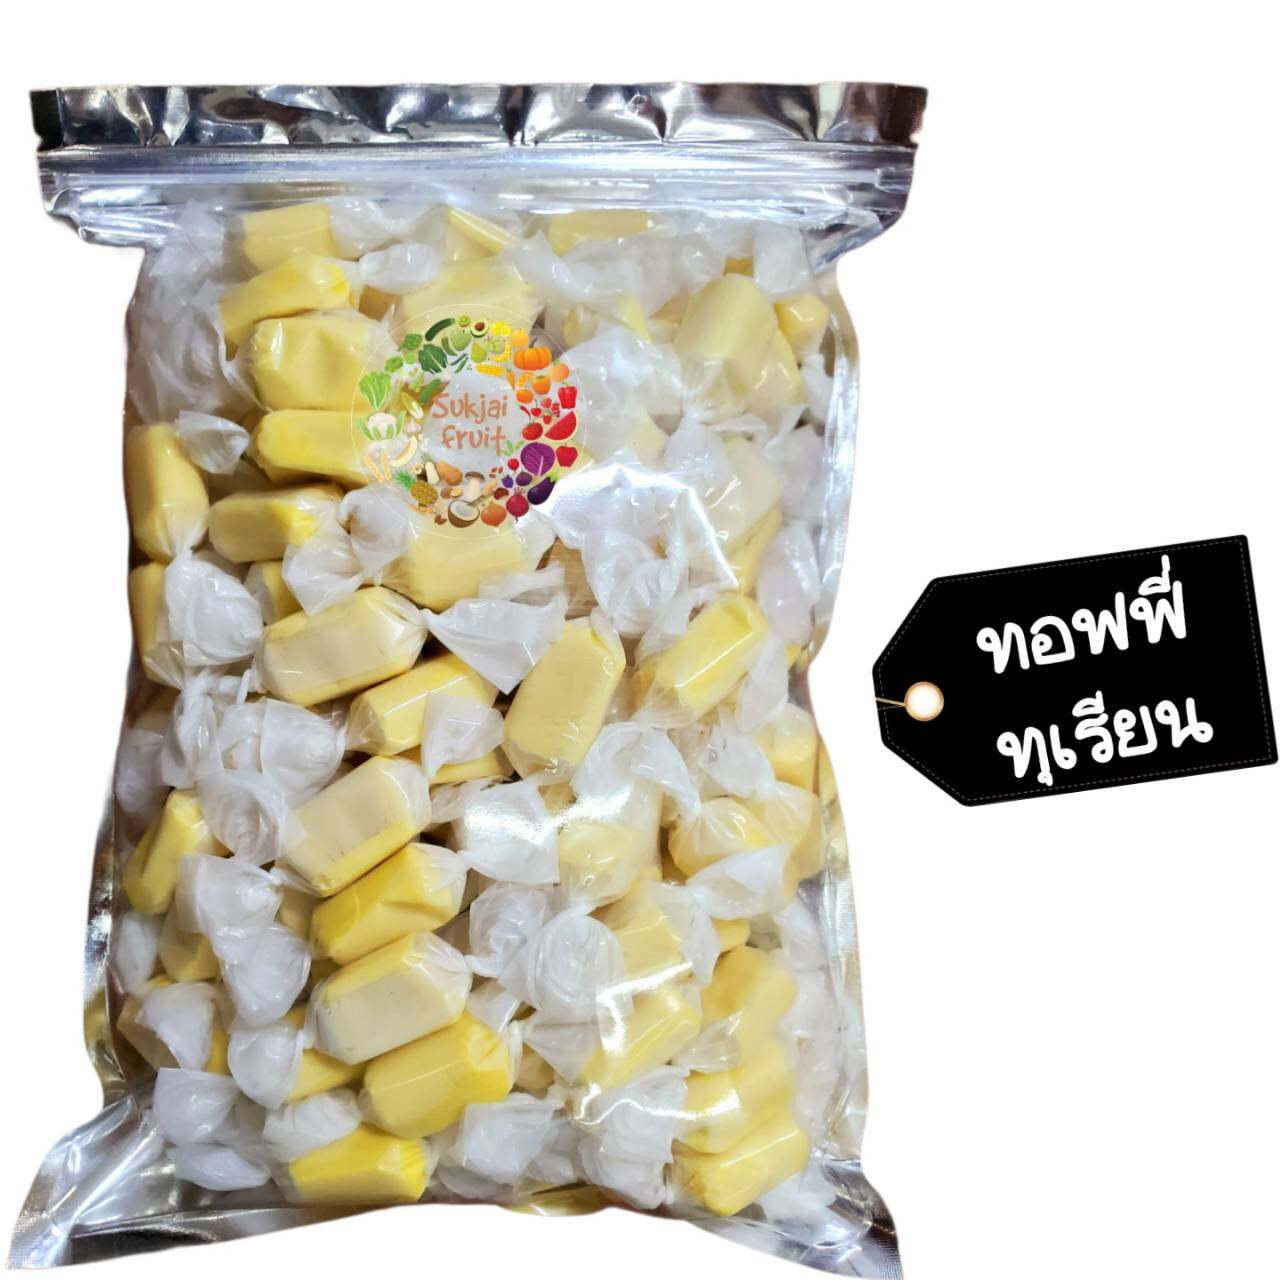 ทอฟฟี่ ทุเรียน 250 กรัม  - Durian milk toffy 250 g  - Dried fruit ผลไม้ อบแห้ง ขนมไทย ขนม OTOP บ๊วย ผลไม้อบแห้ง บ๊วย ผลไม้อบแห้ง ท๊อฟฟี่ ขนม ลูกอม